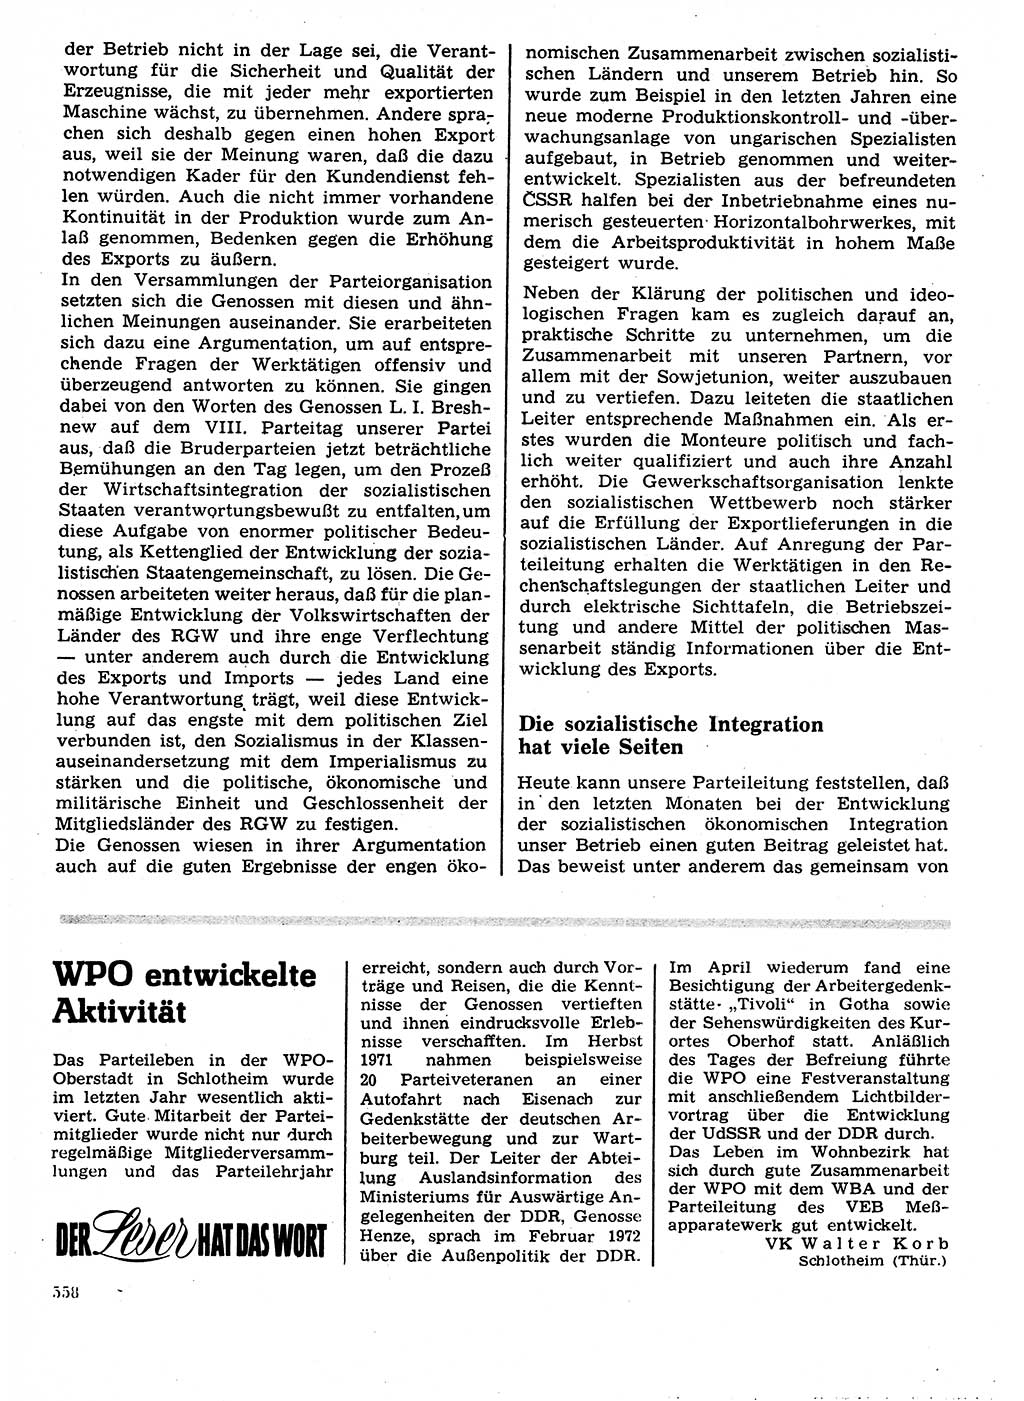 Neuer Weg (NW), Organ des Zentralkomitees (ZK) der SED (Sozialistische Einheitspartei Deutschlands) für Fragen des Parteilebens, 27. Jahrgang [Deutsche Demokratische Republik (DDR)] 1972, Seite 558 (NW ZK SED DDR 1972, S. 558)